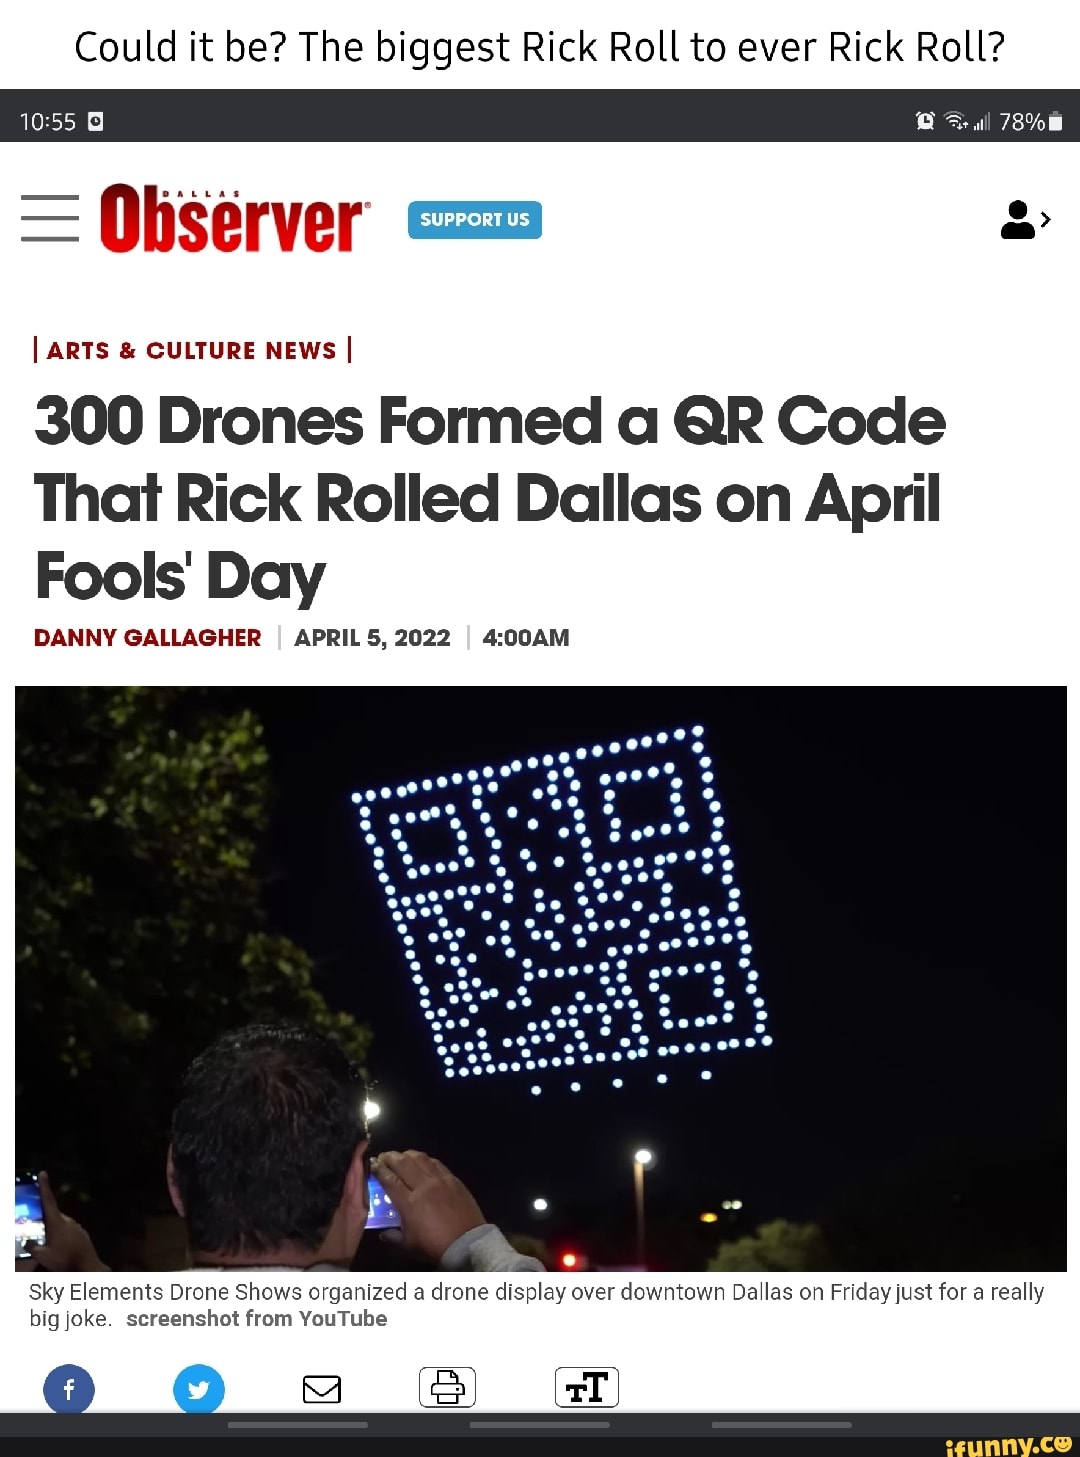 Epic April Fools Prank - Drone QR Code - Epic Rick Roll